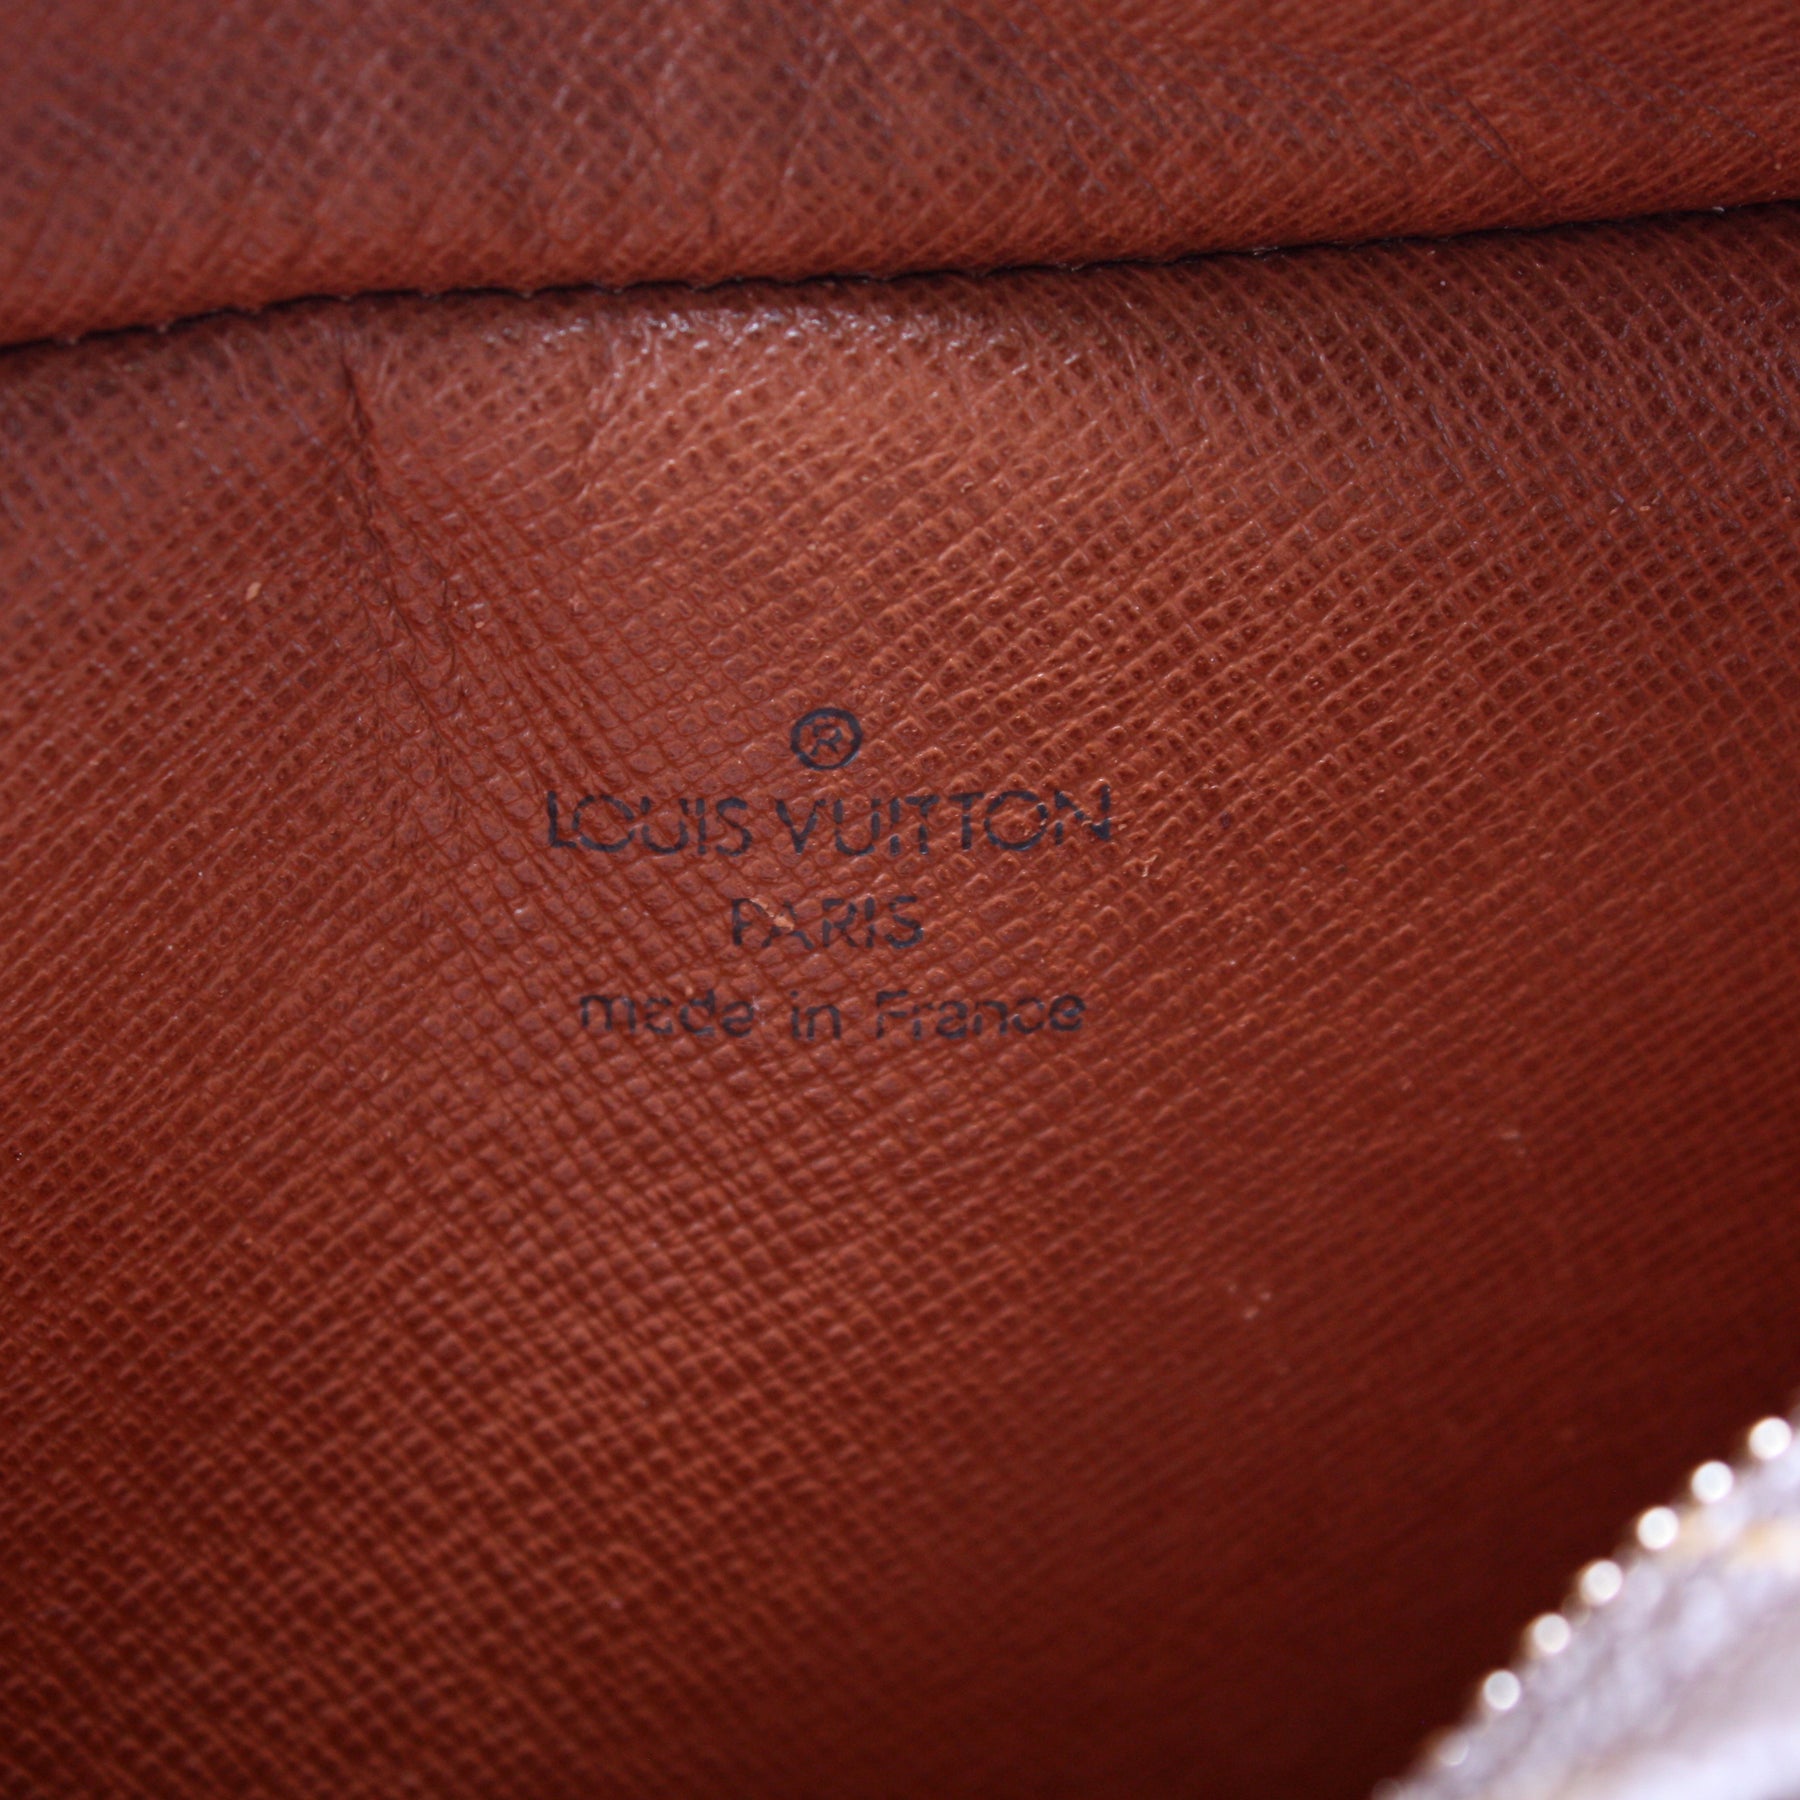 Saint-germain vintage vinyl bag Louis Vuitton Brown in Vinyl - 35491280